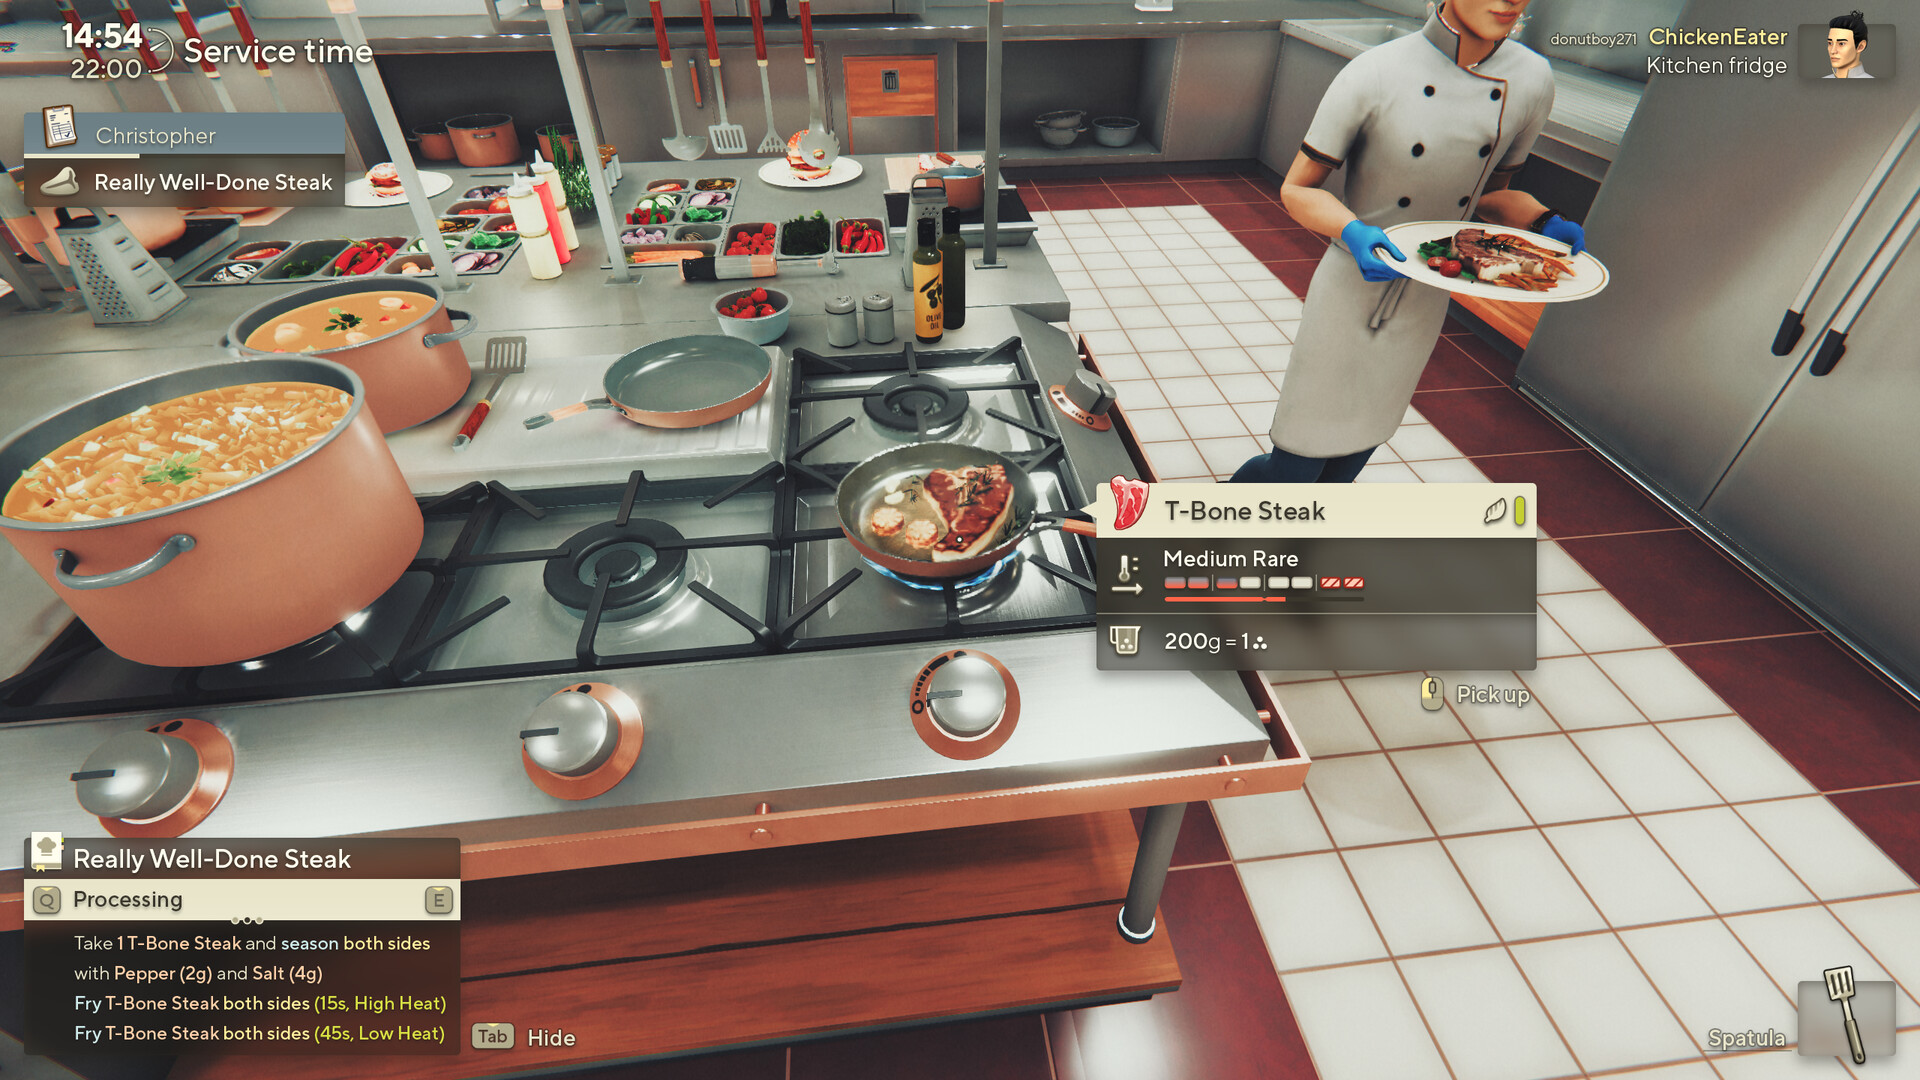 O MELHOR jogo de CULINÁRIA já feito - Cooking Simulator 